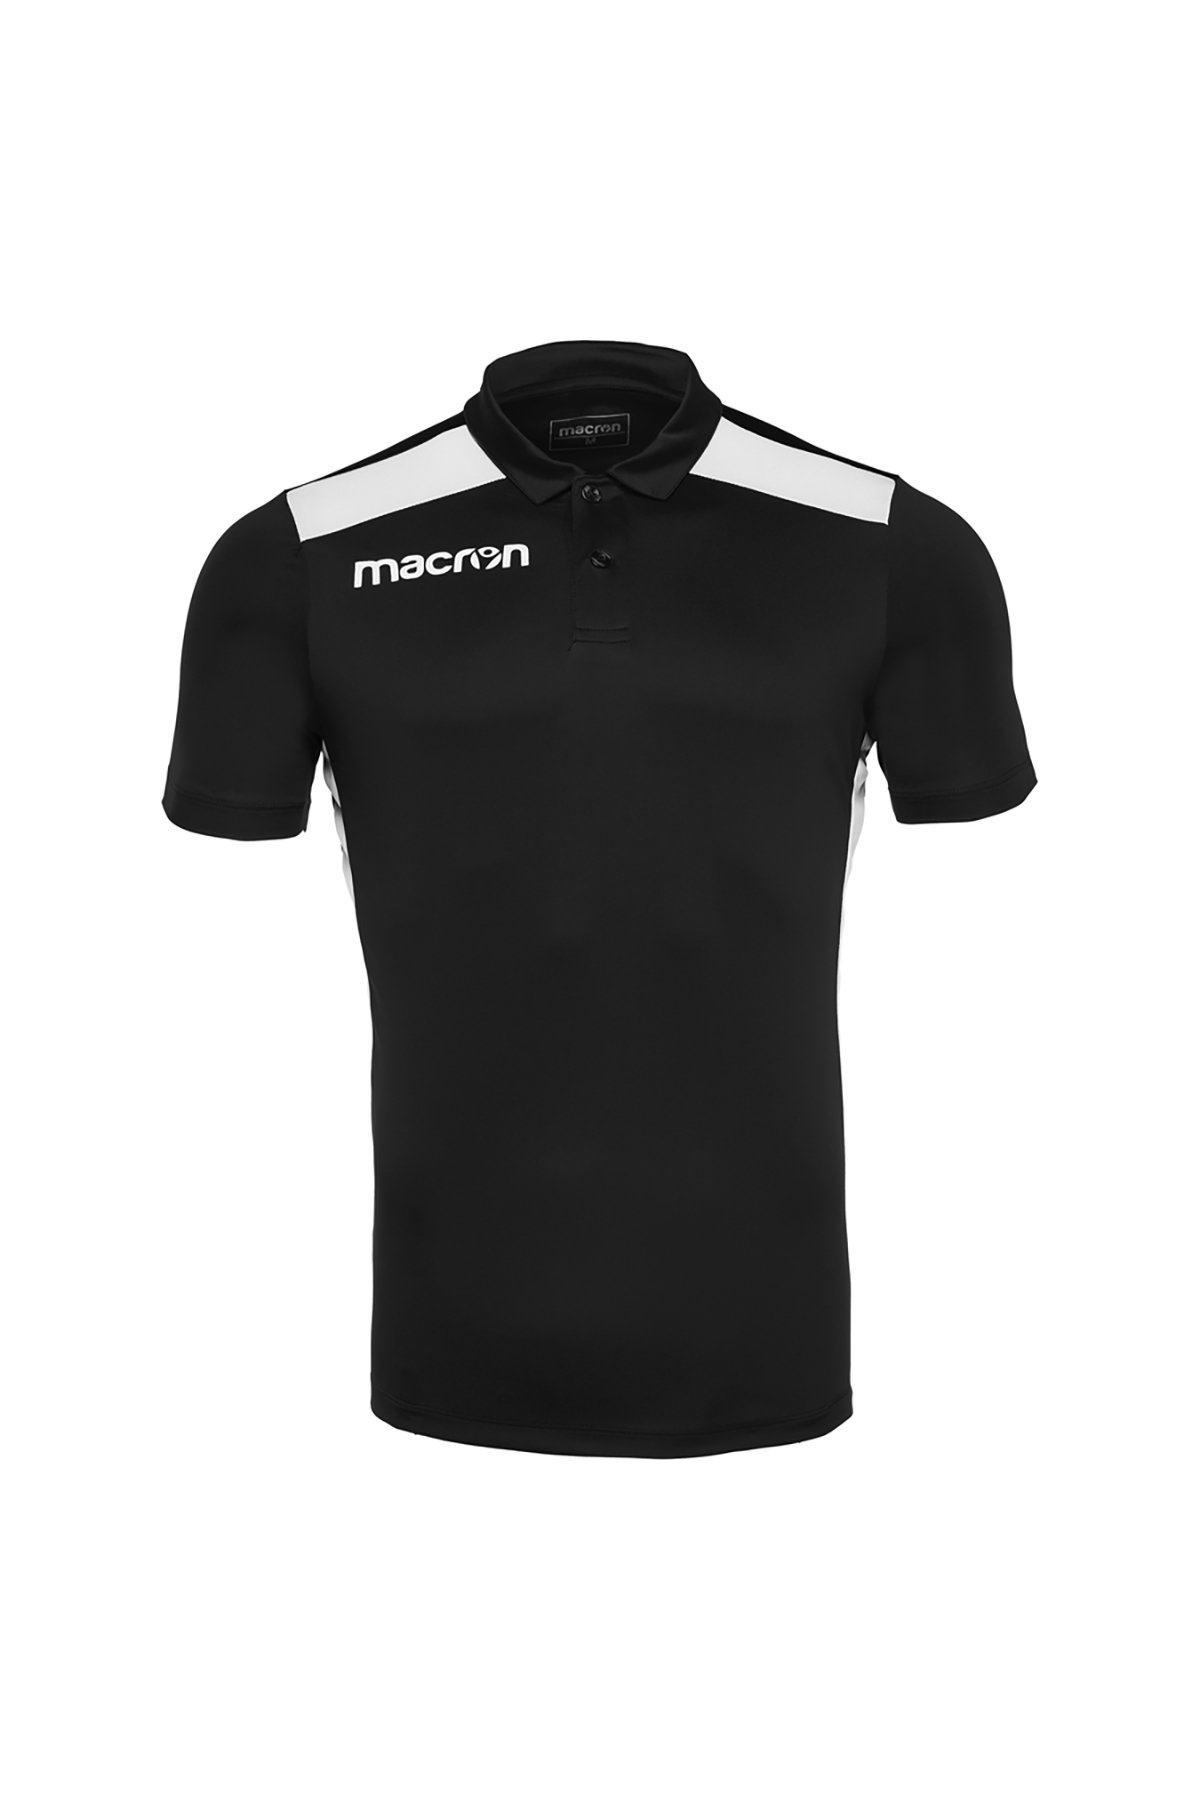 Macron Siyah Polo Yaka T-Shirt 90510901 - 1